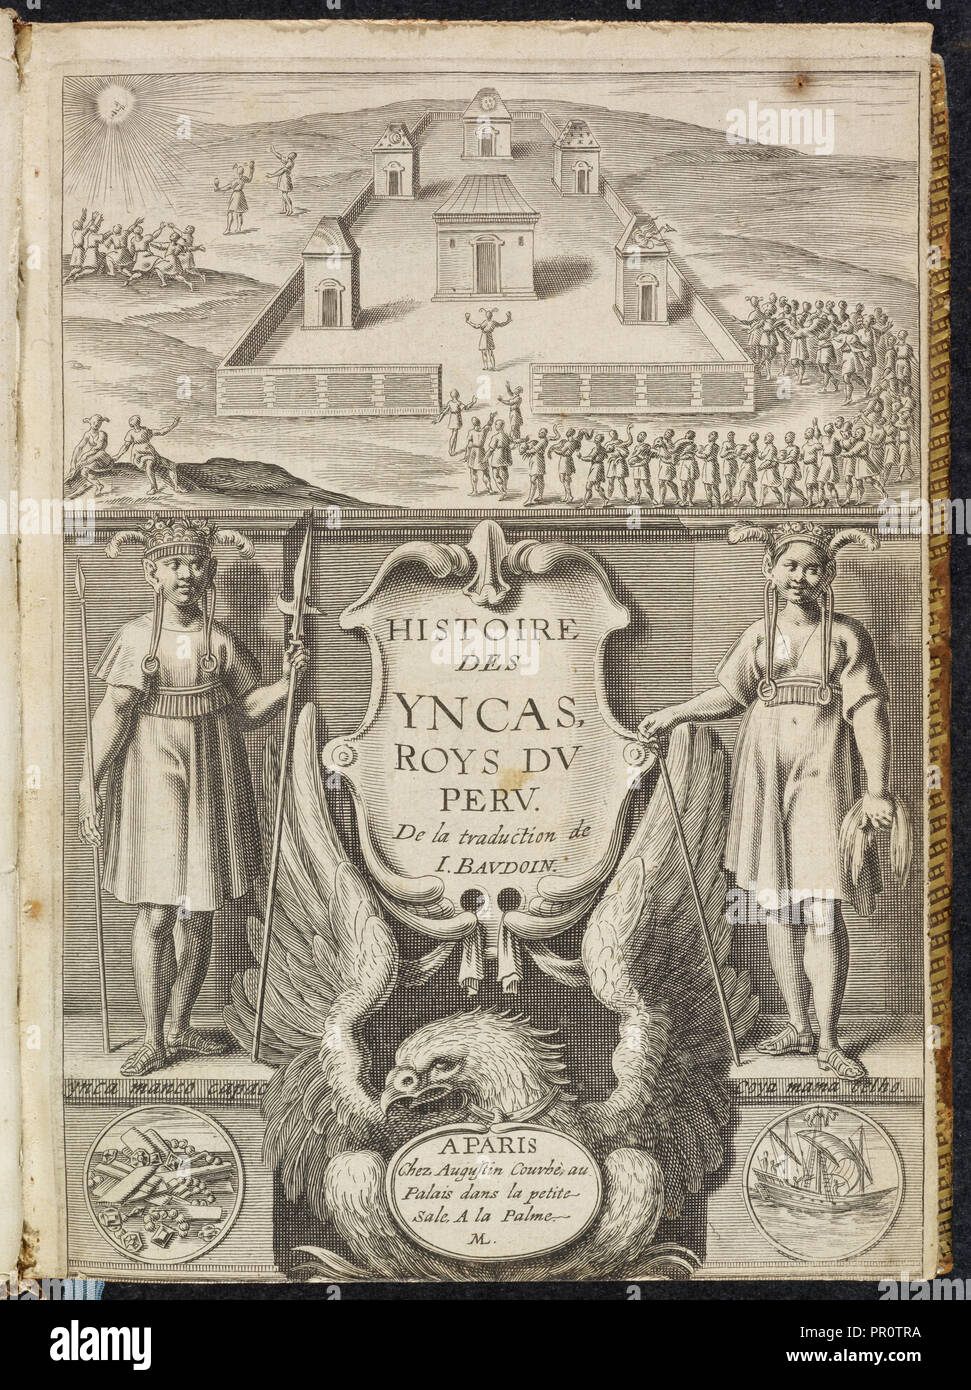 Histoire des Yncas: Roys du Peru, Le commentaire royal, ou, L'histoire des Yncas, roys du Peru: contenant leur origine Stock Photo